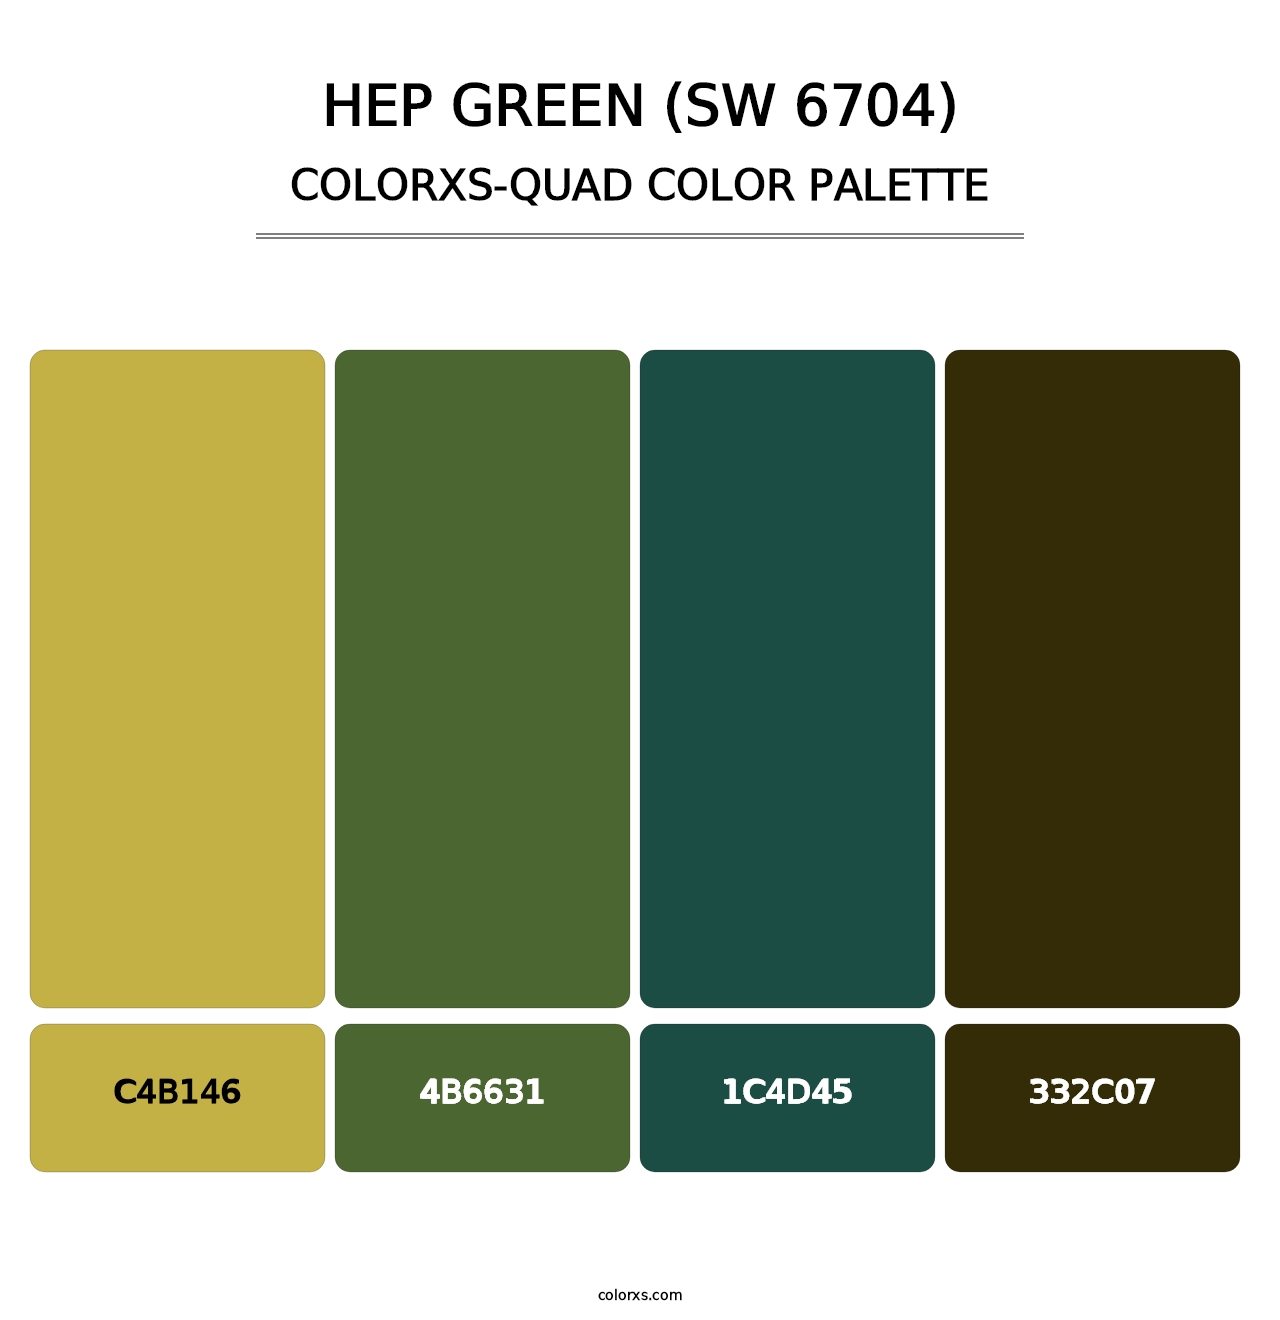 Hep Green (SW 6704) - Colorxs Quad Palette